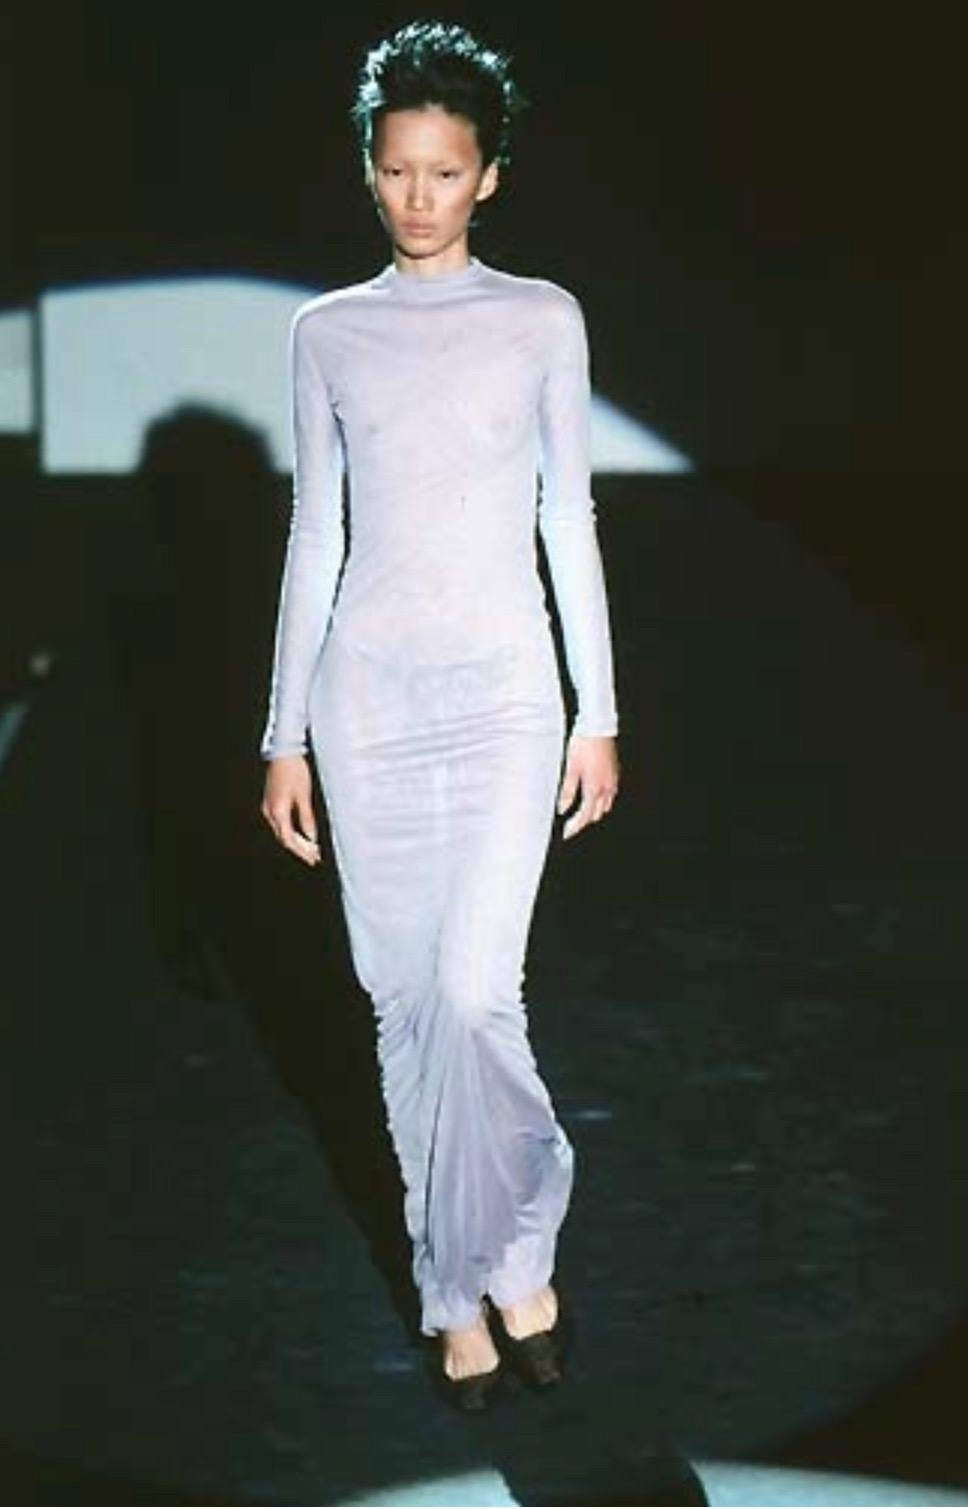 Collectional présente une robe noire fluide en viscose, conçue par Tom Ford et produite pour la collection printemps/été 1998 de Gucci. Le tissu fin permet une extensibilité parfaite pour mettre en valeur le corps de la personne qui le porte et les